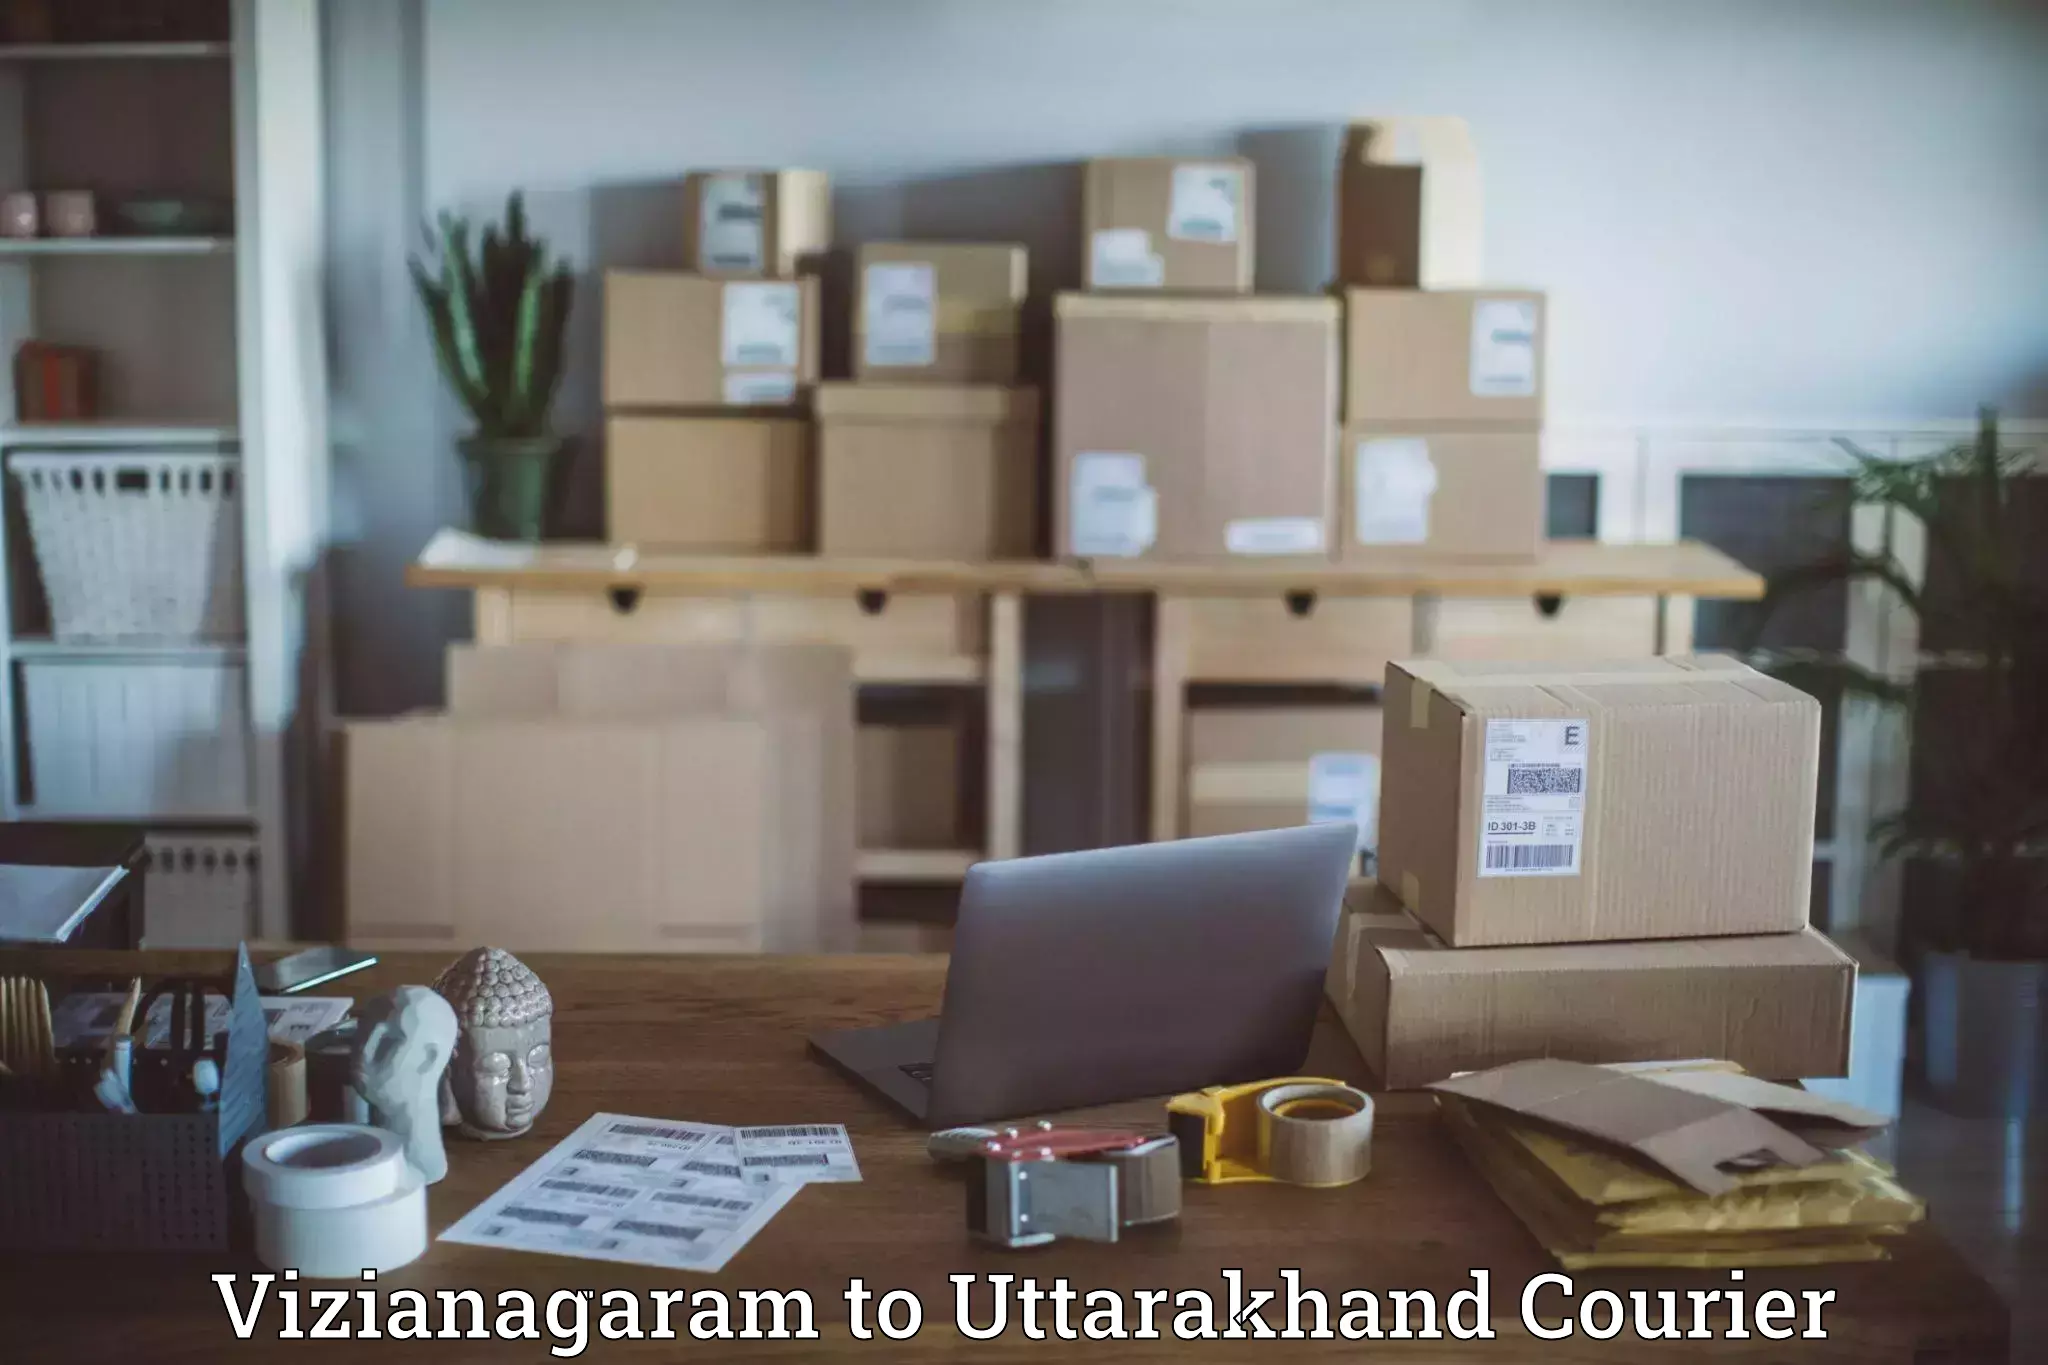 Efficient parcel delivery Vizianagaram to Dehradun